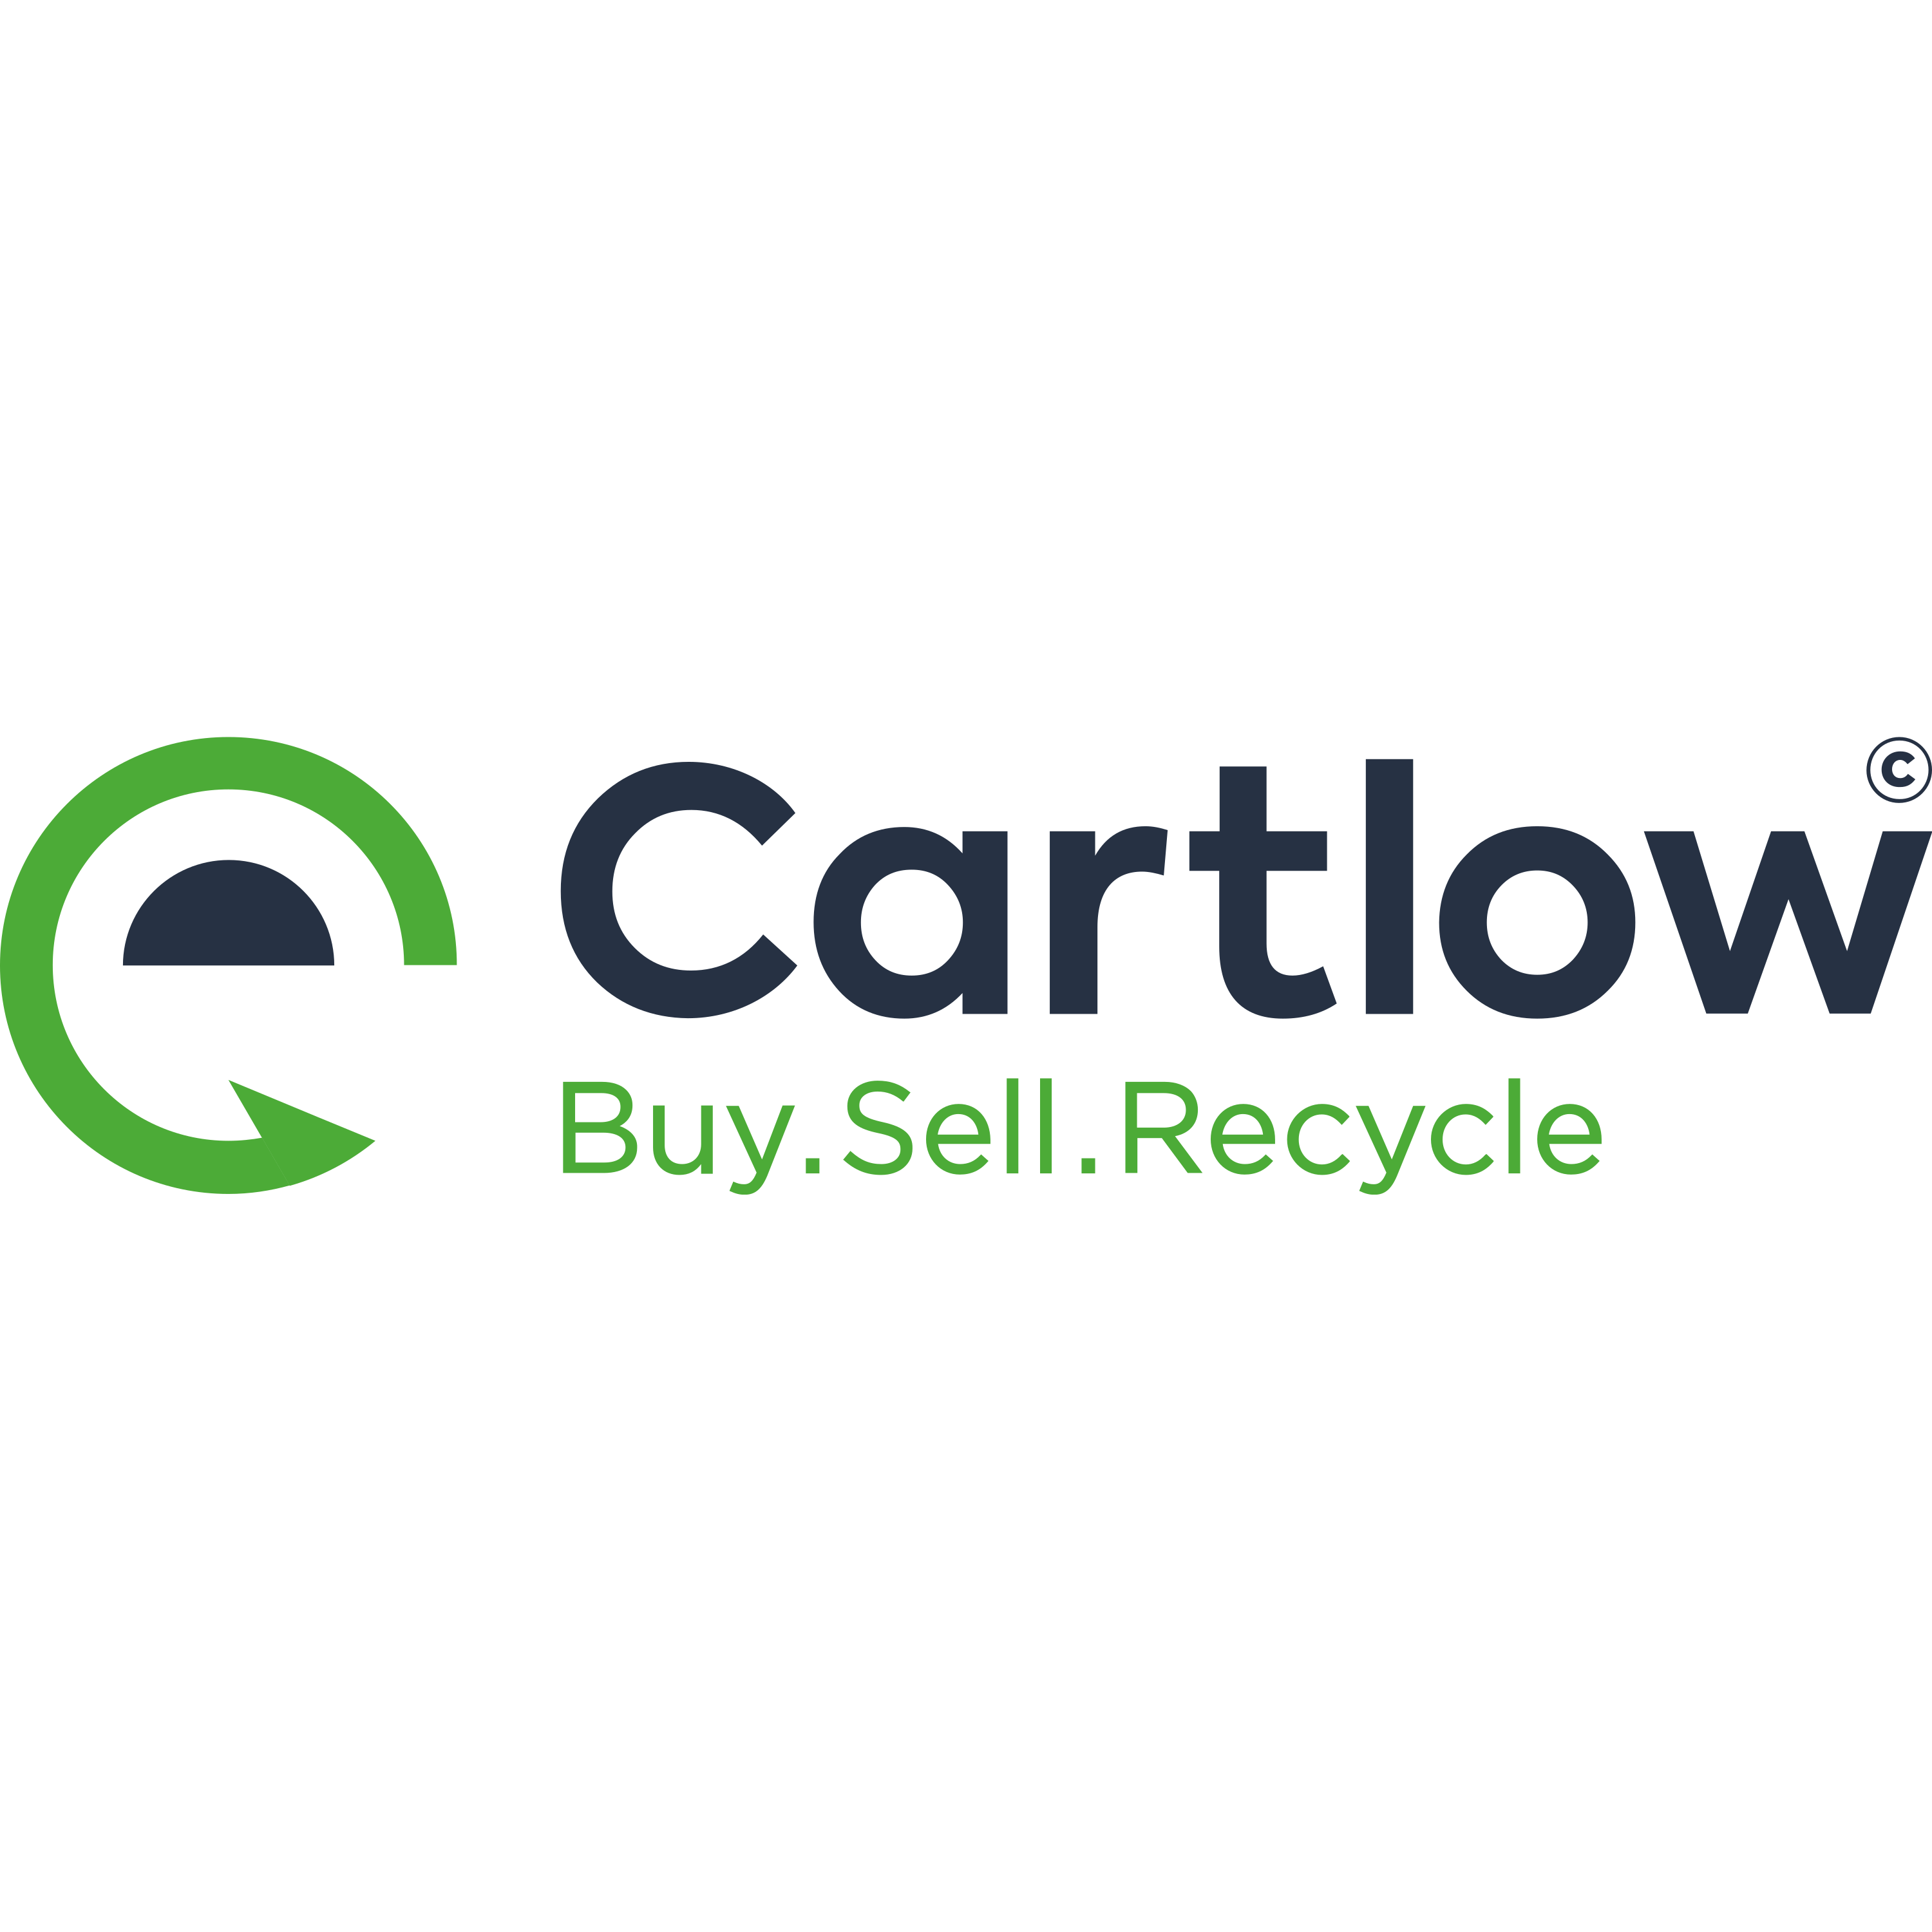 Cartlow Logo  Transparent Image